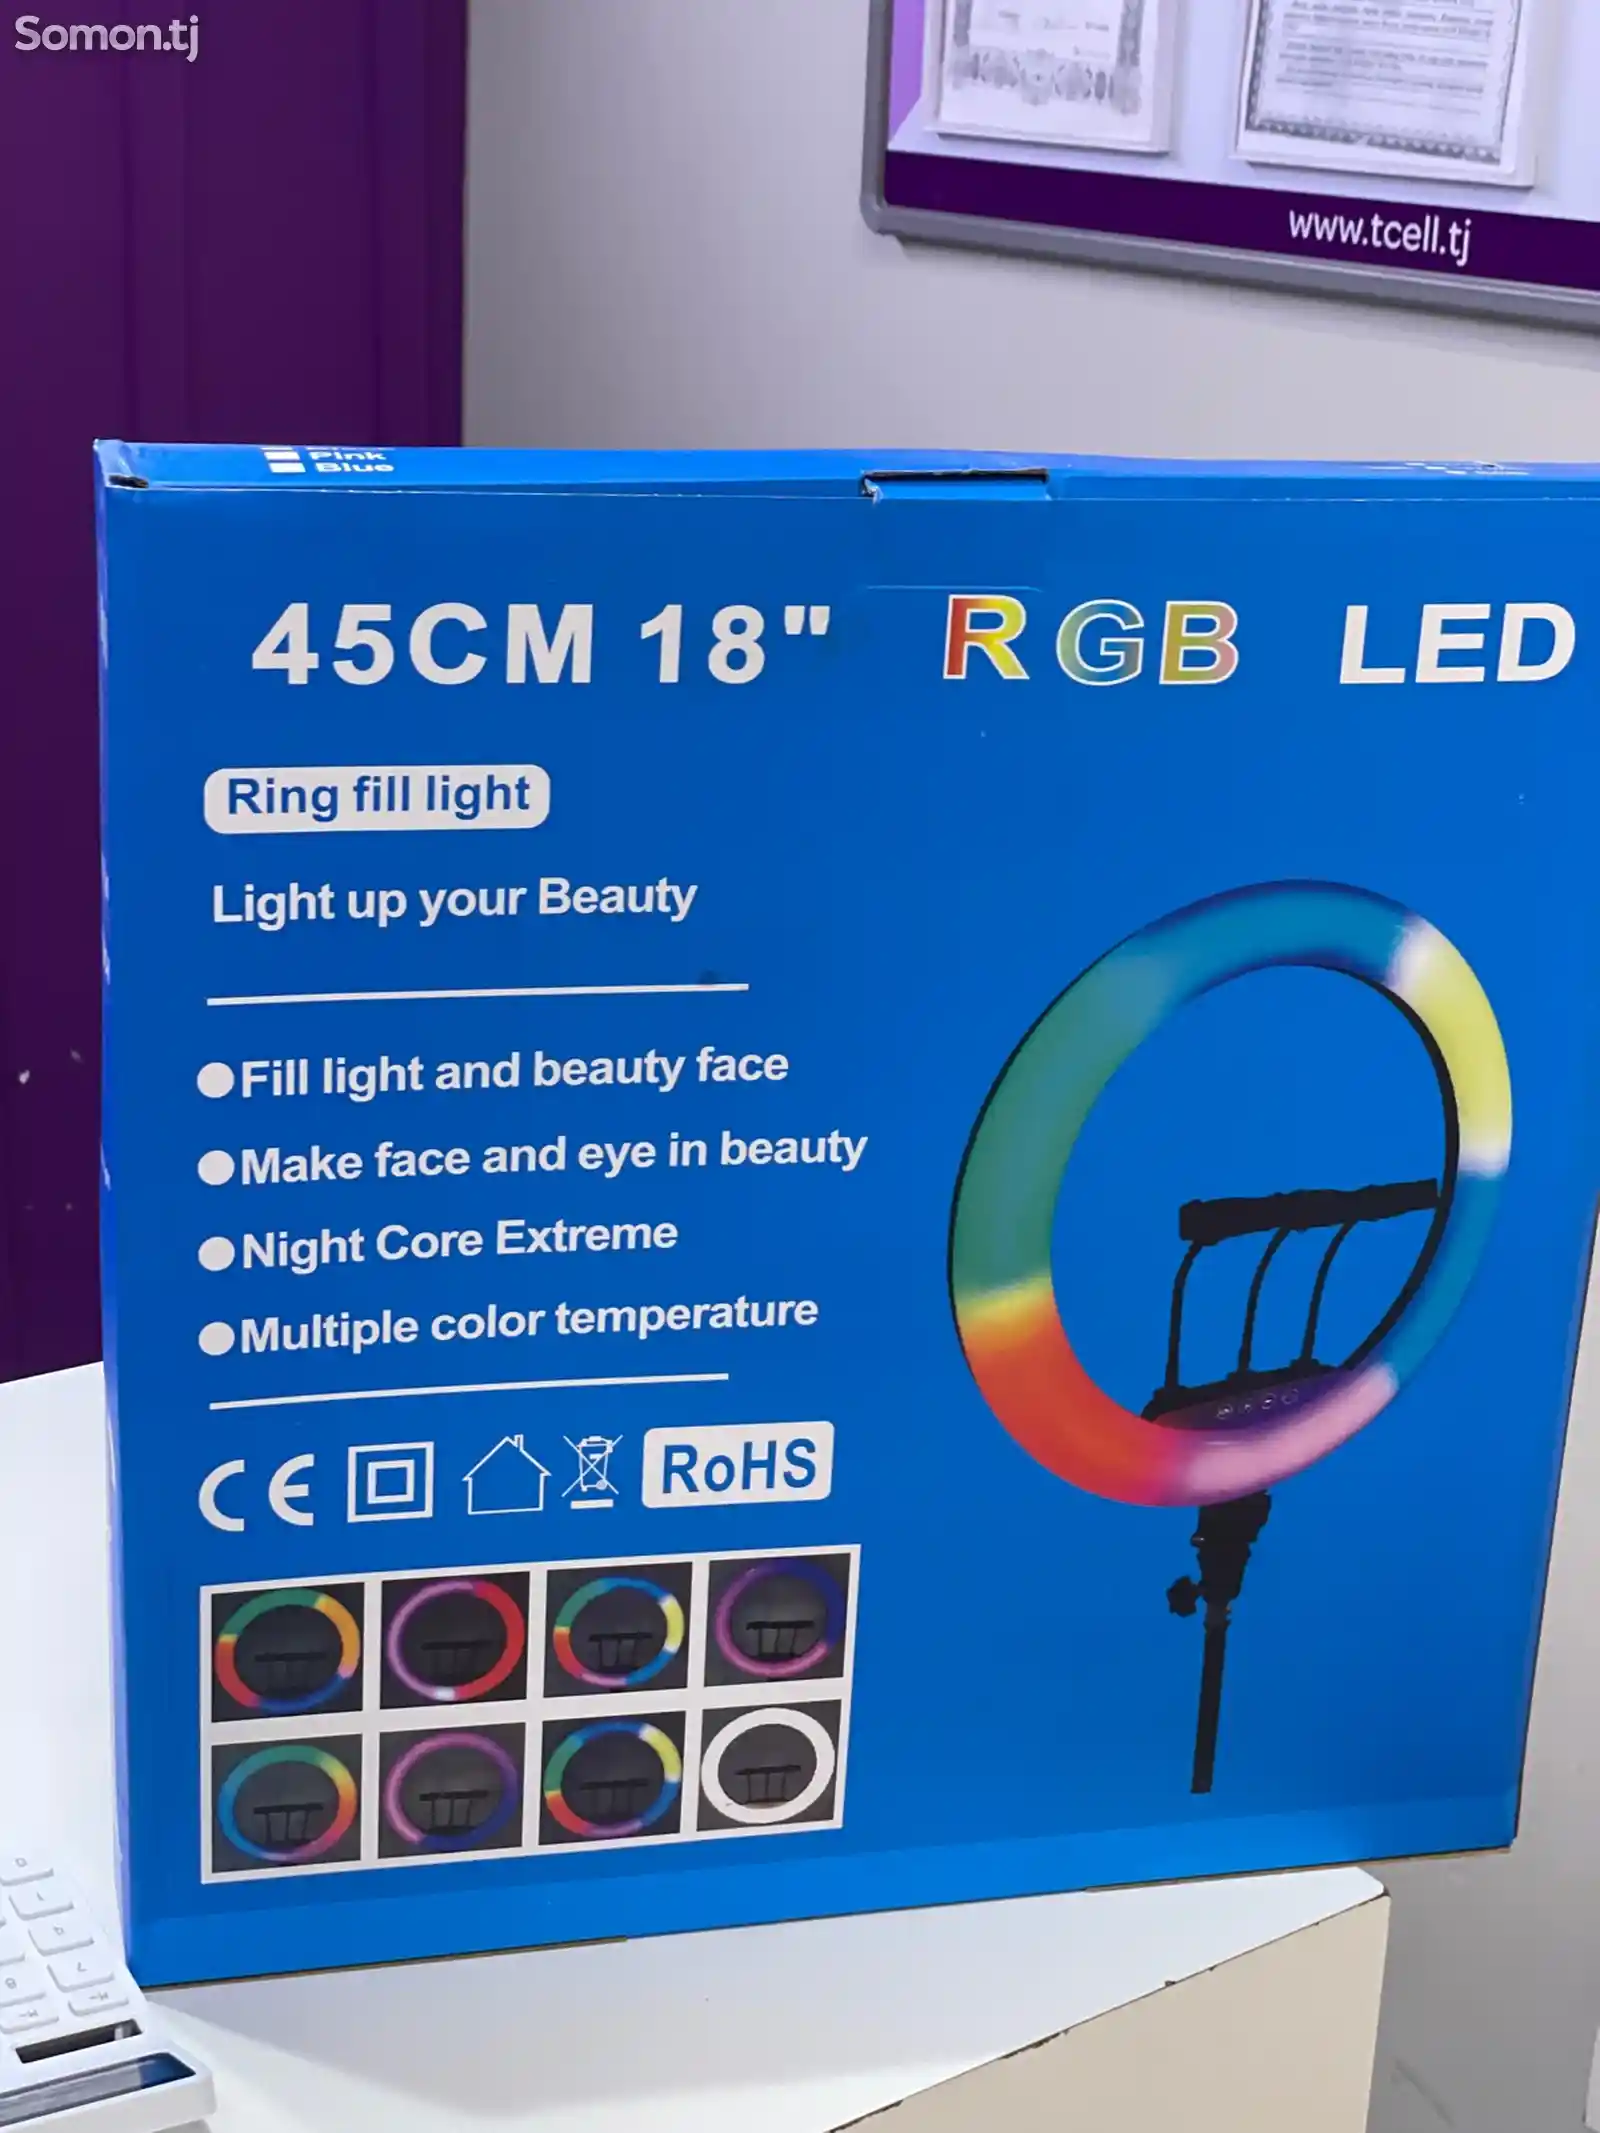 Цветная кольцевая LED лампа RGB 45 см со штативом тремя держателями для телефона-1